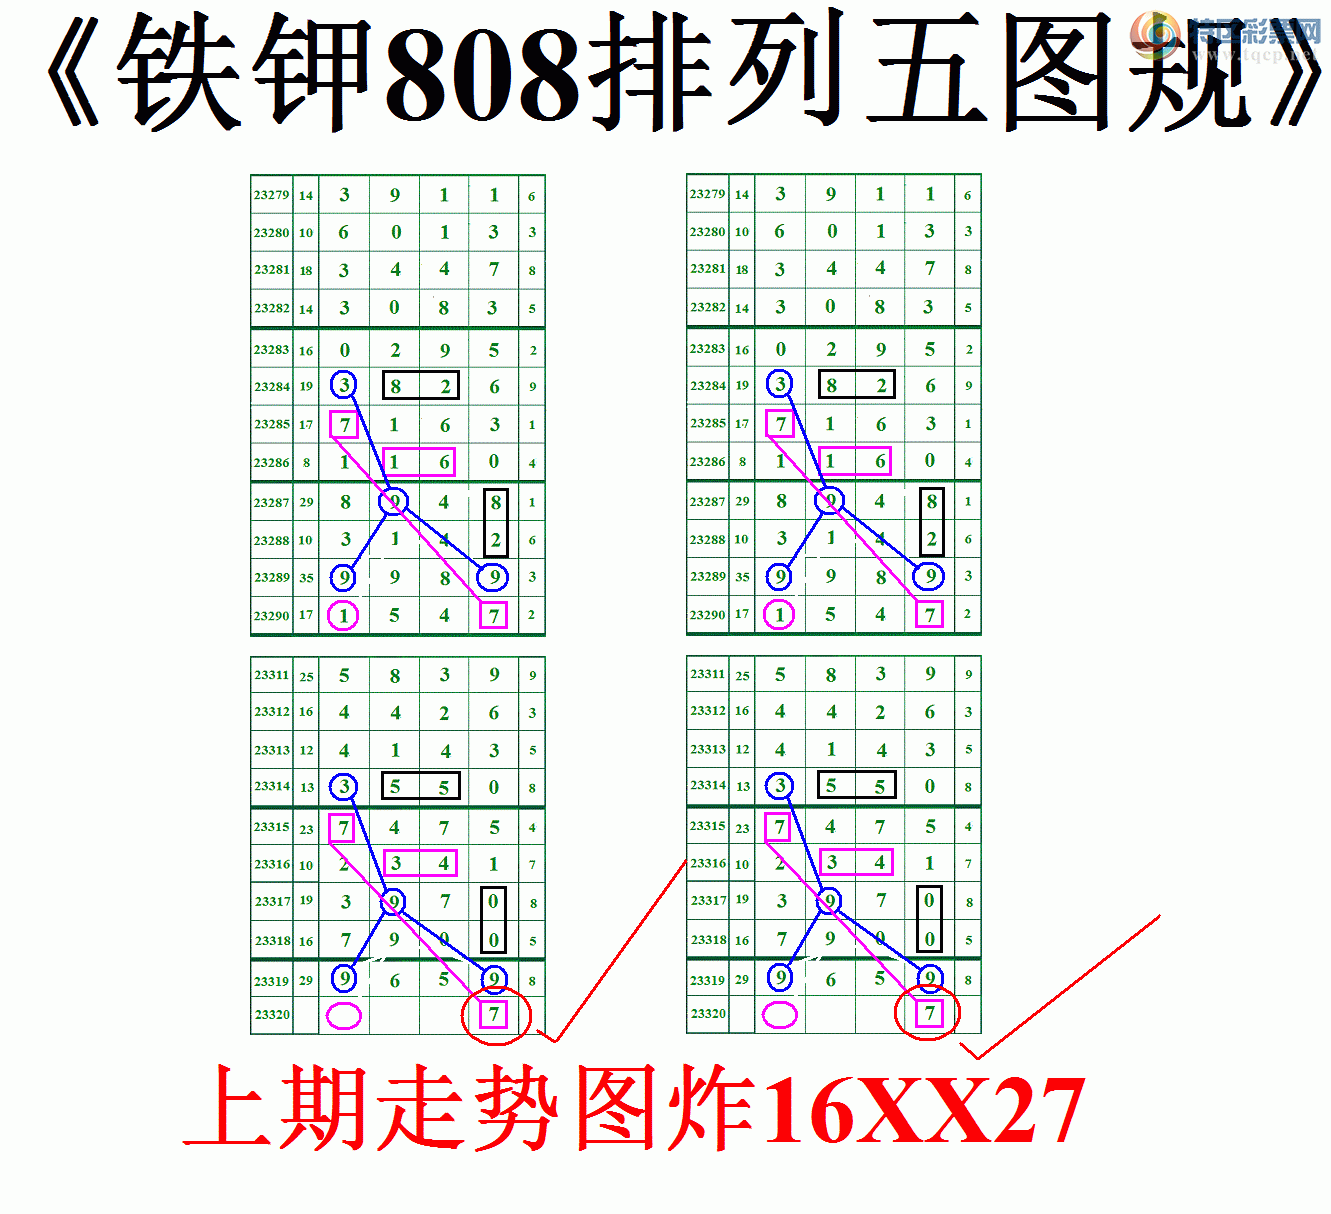 000055.GIF(463211.GIF